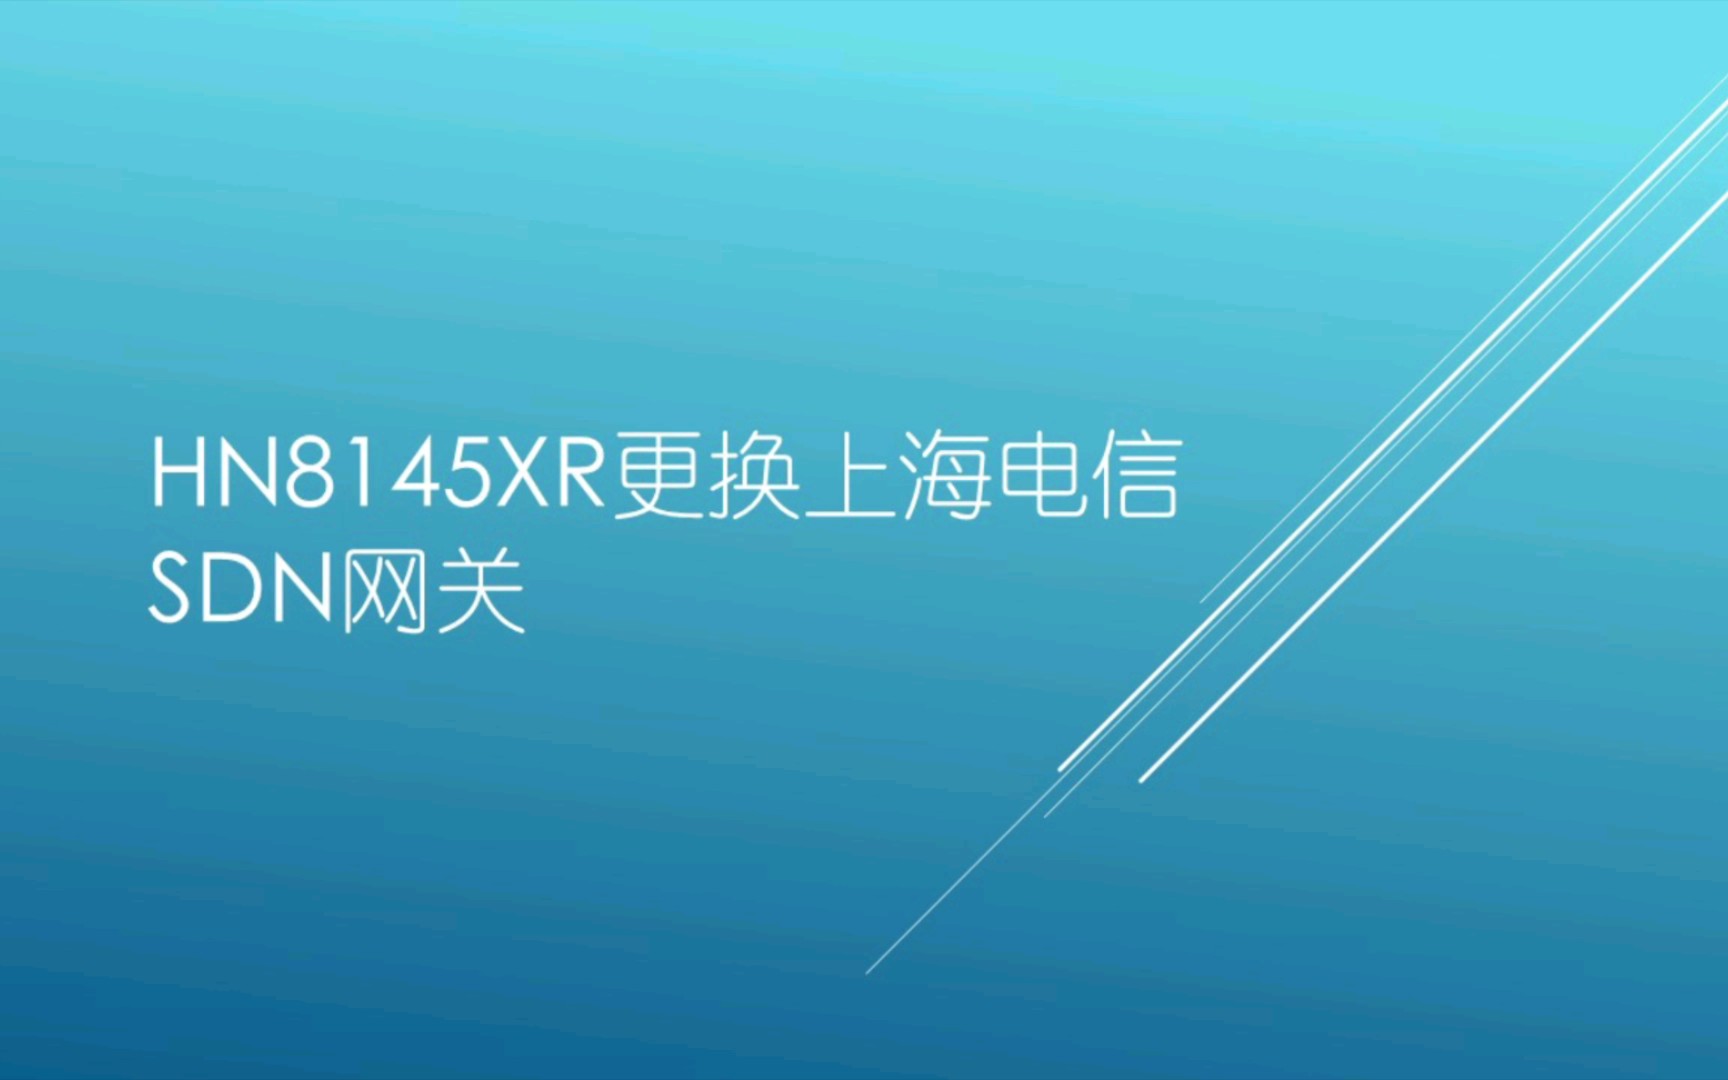 HN8145XR更换上海电信SDN网关问答